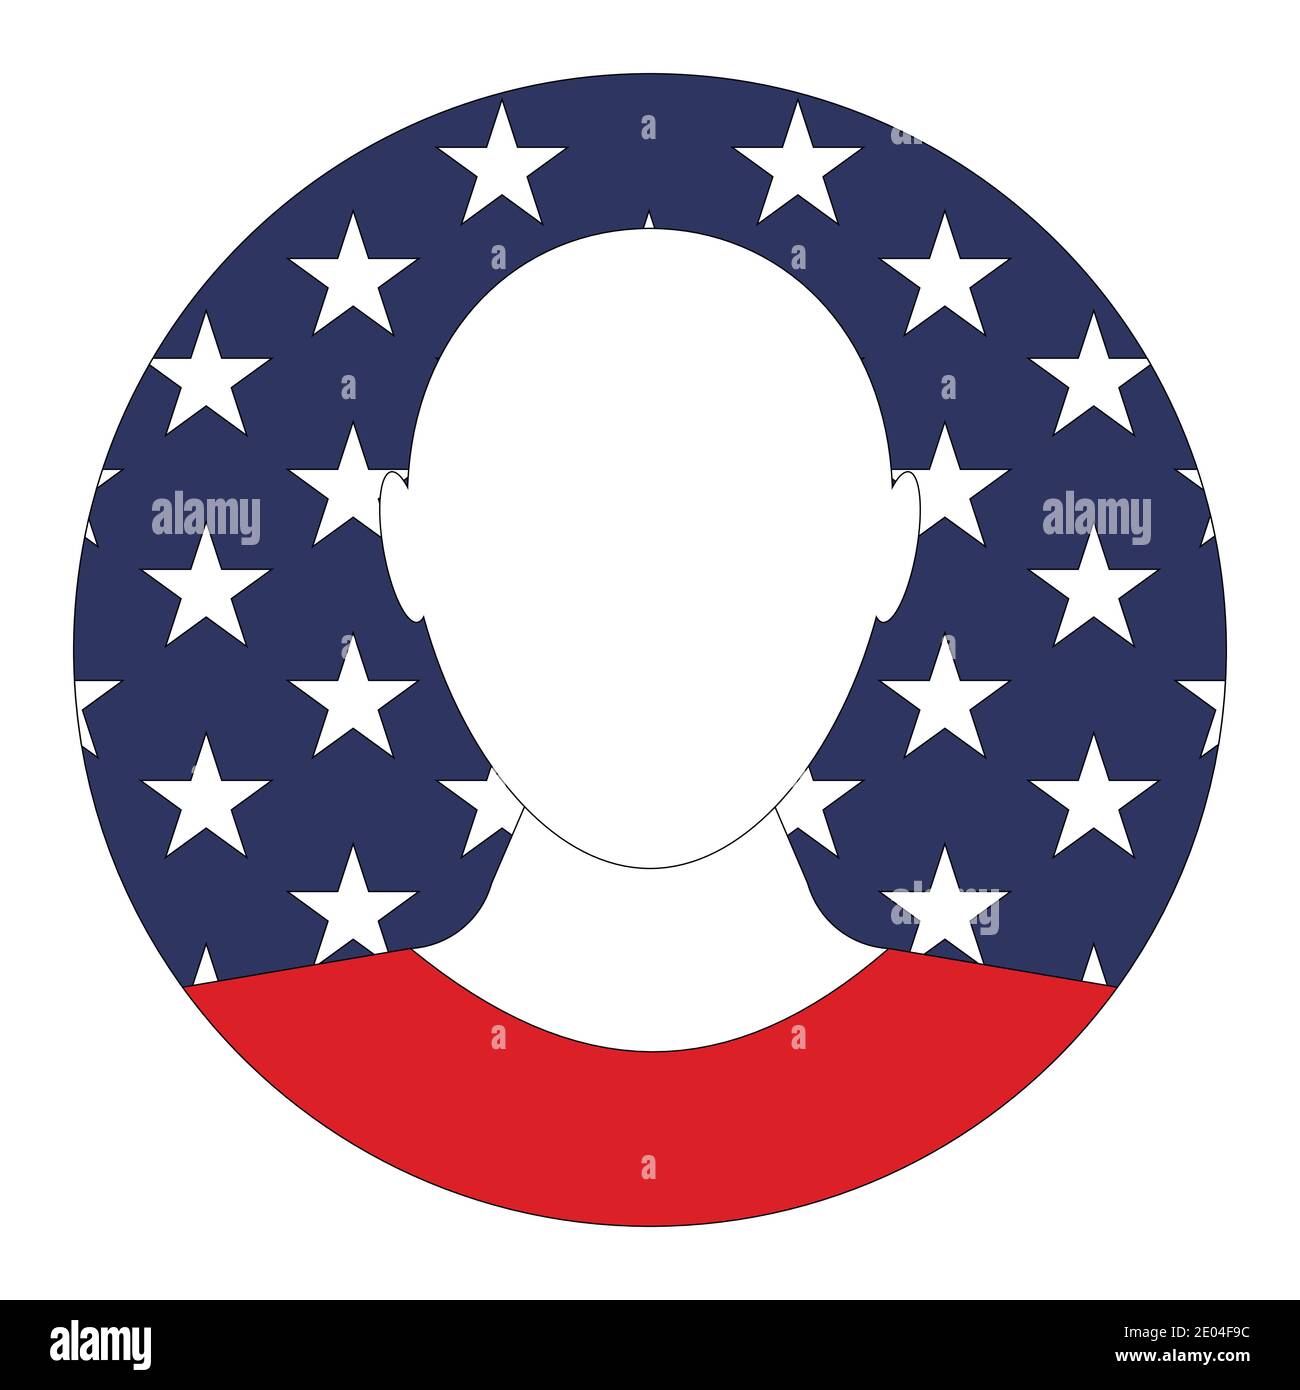 Avatar USA image contours profil de personne, vecteur drapeau USA avatar pour chat ou forum Illustration de Vecteur